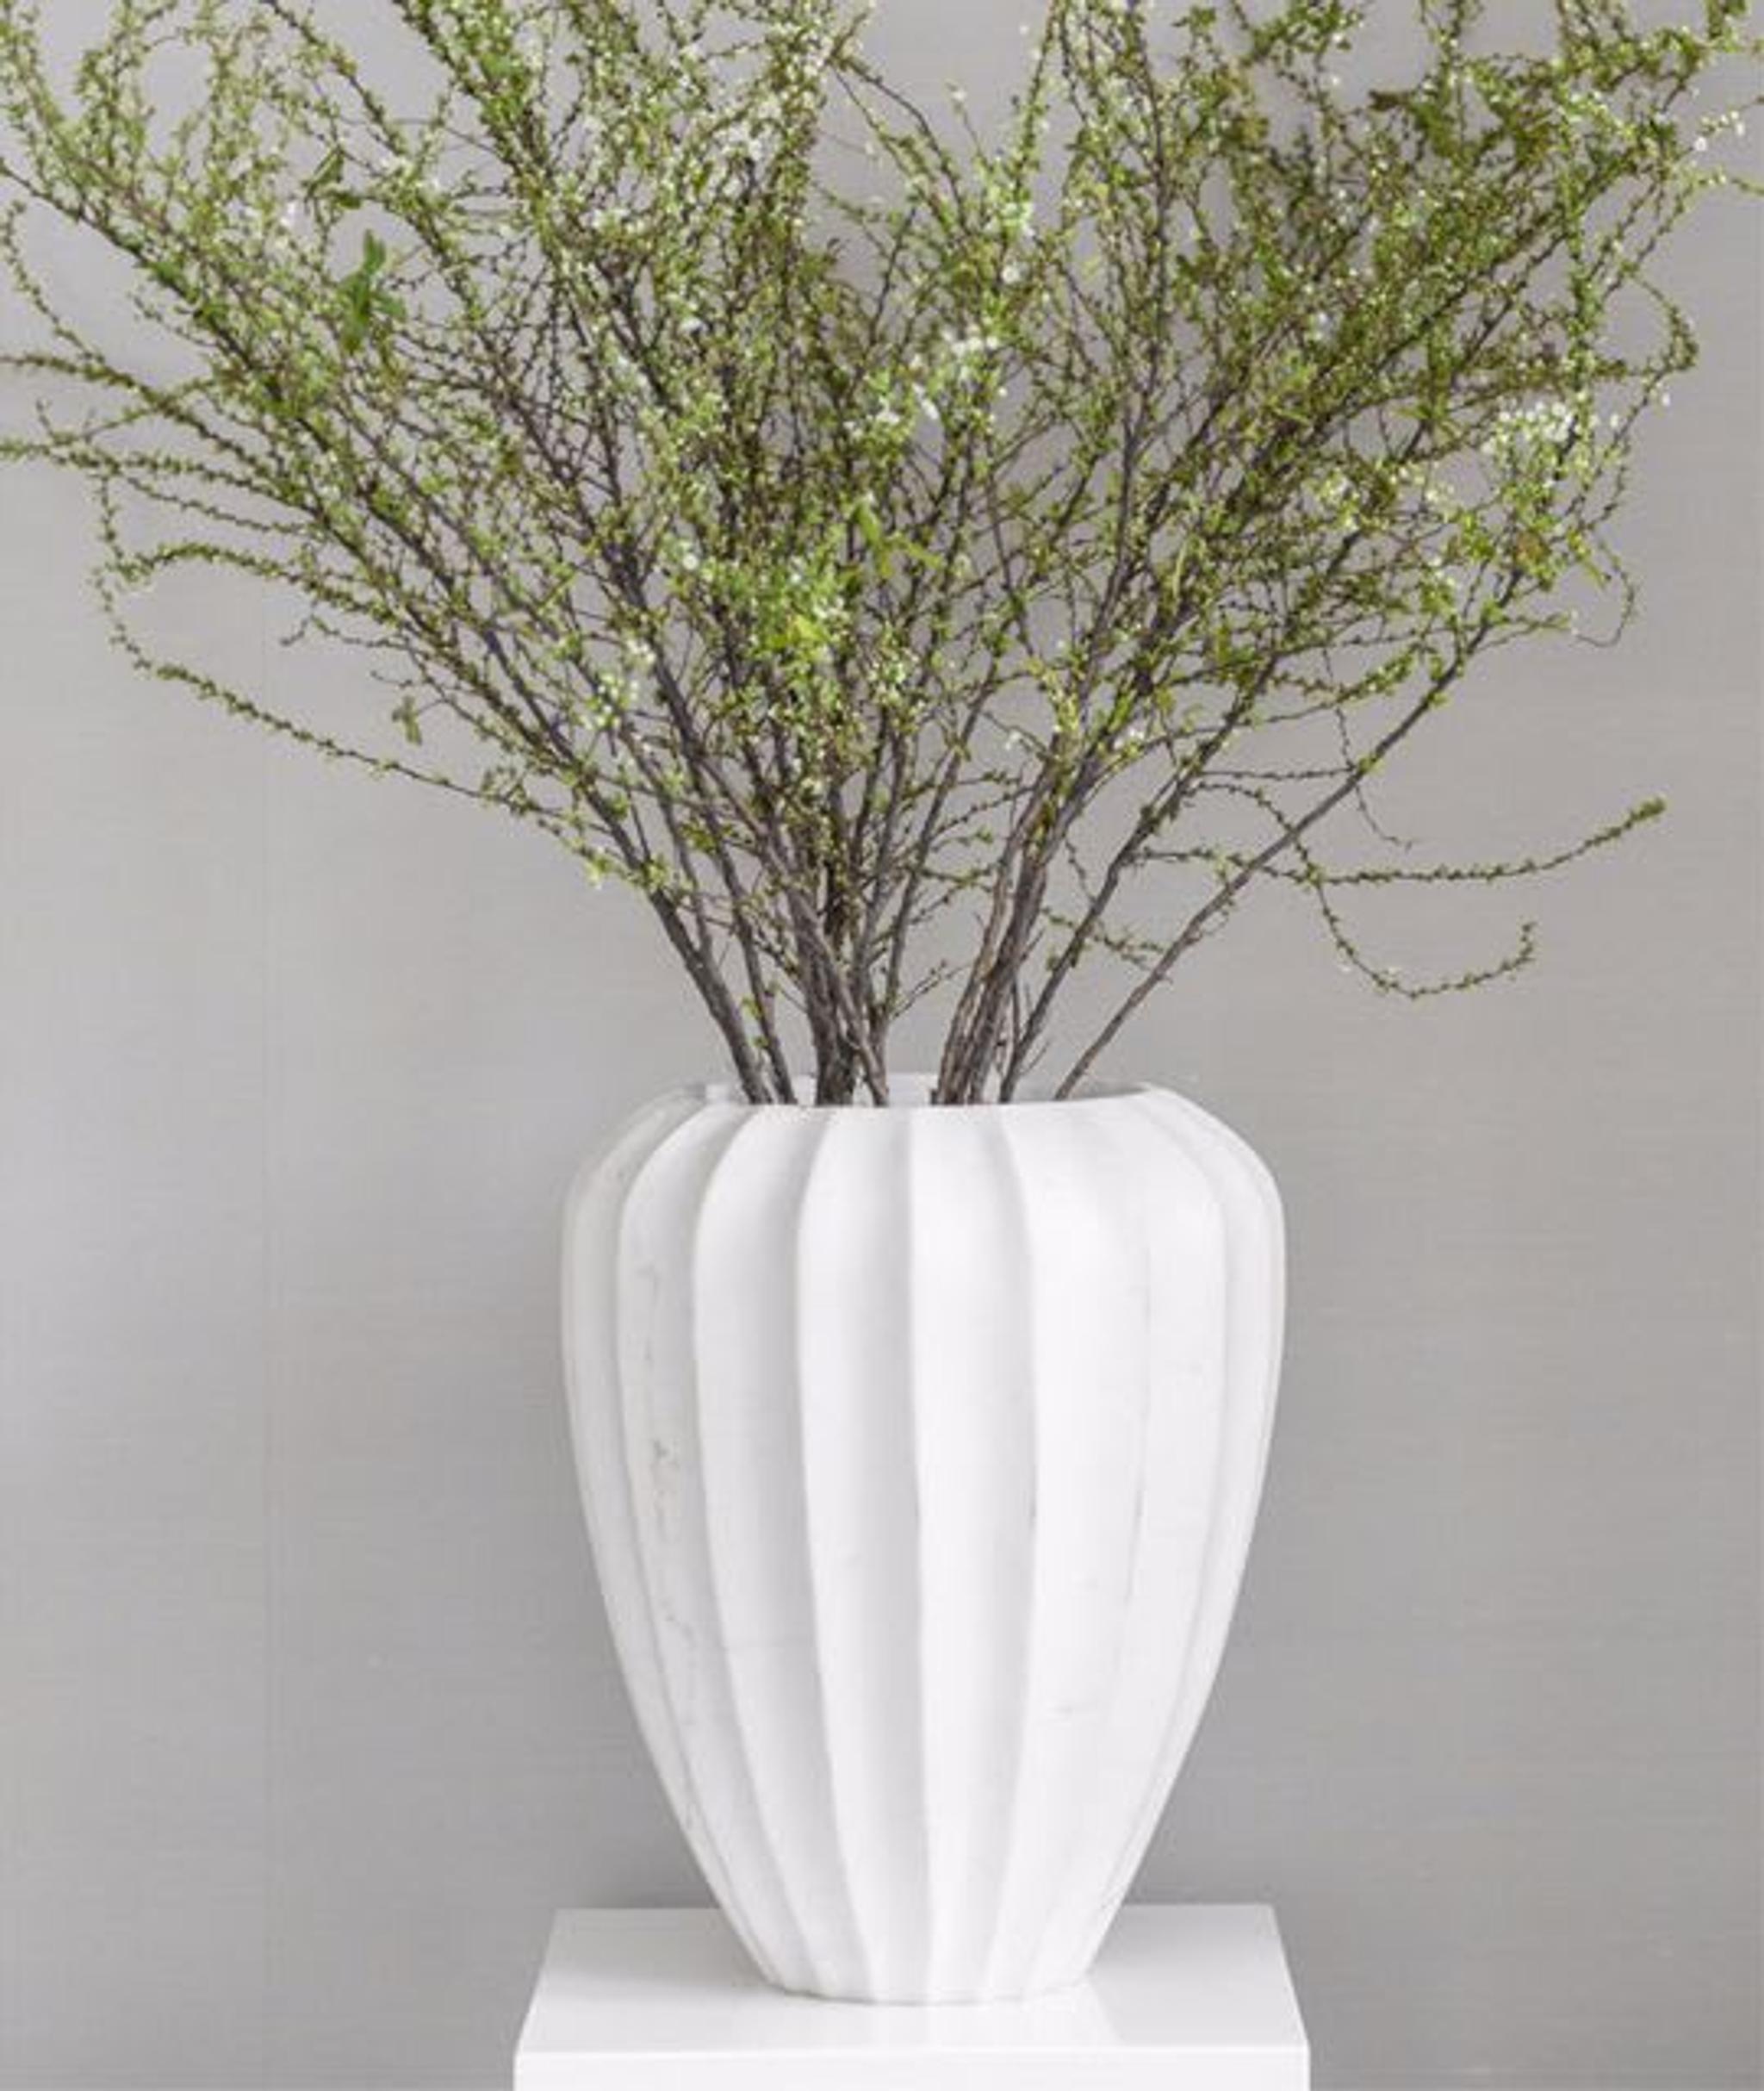 Raffinierte Dekorationsdetails - eine Keramikvase mit langen grünen Zweigen der Saison verleiht einen Hauch von Grün